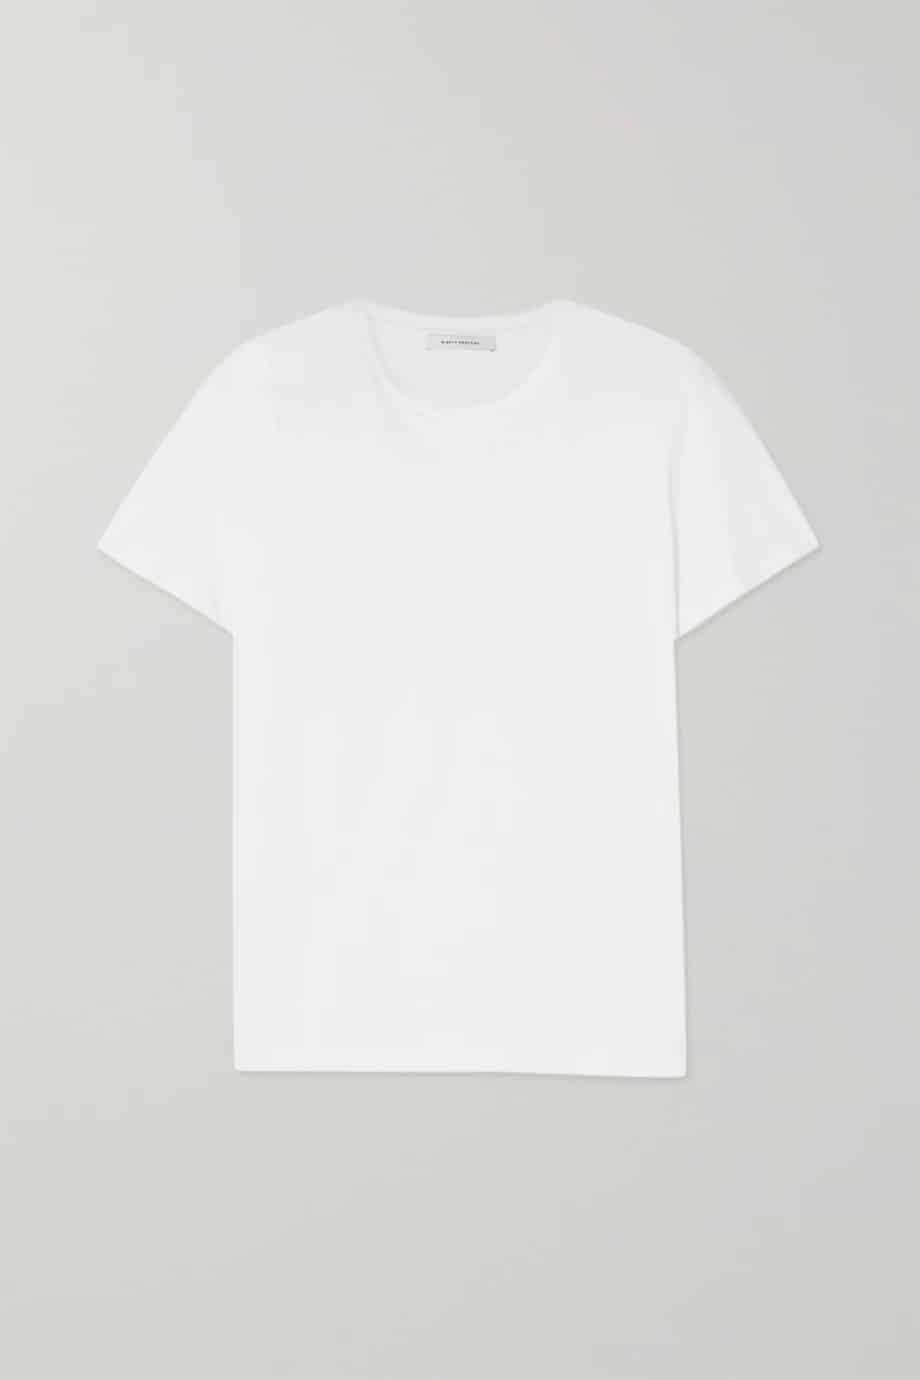 7 savršenih: Ninety Percent bijeli T-shirt za proljeće 2021.